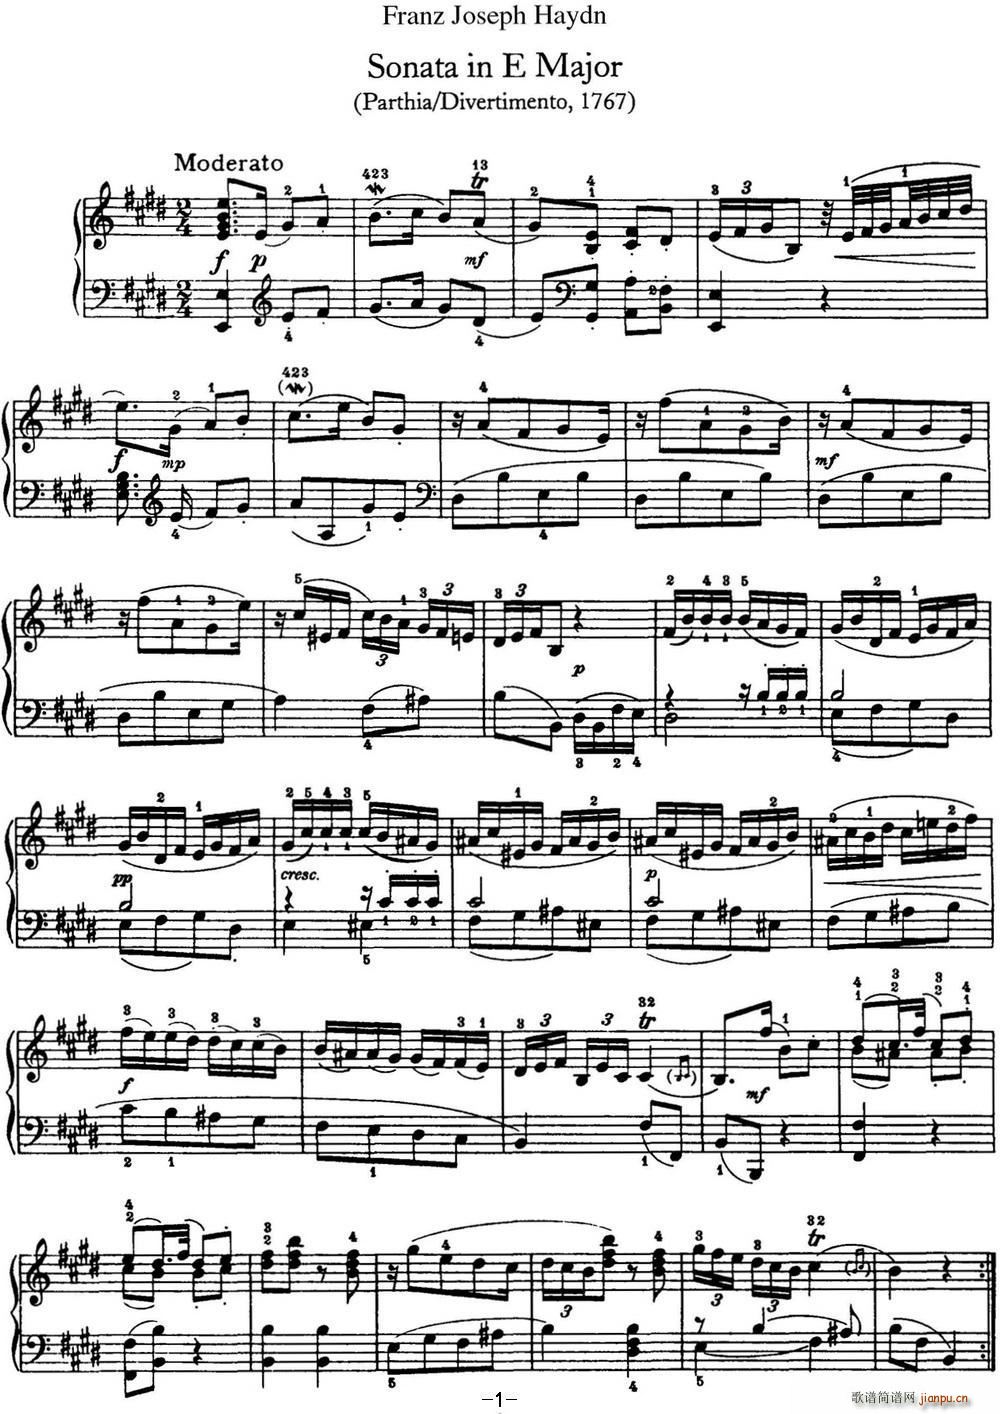   Hob XVI 13 Partita E major()1